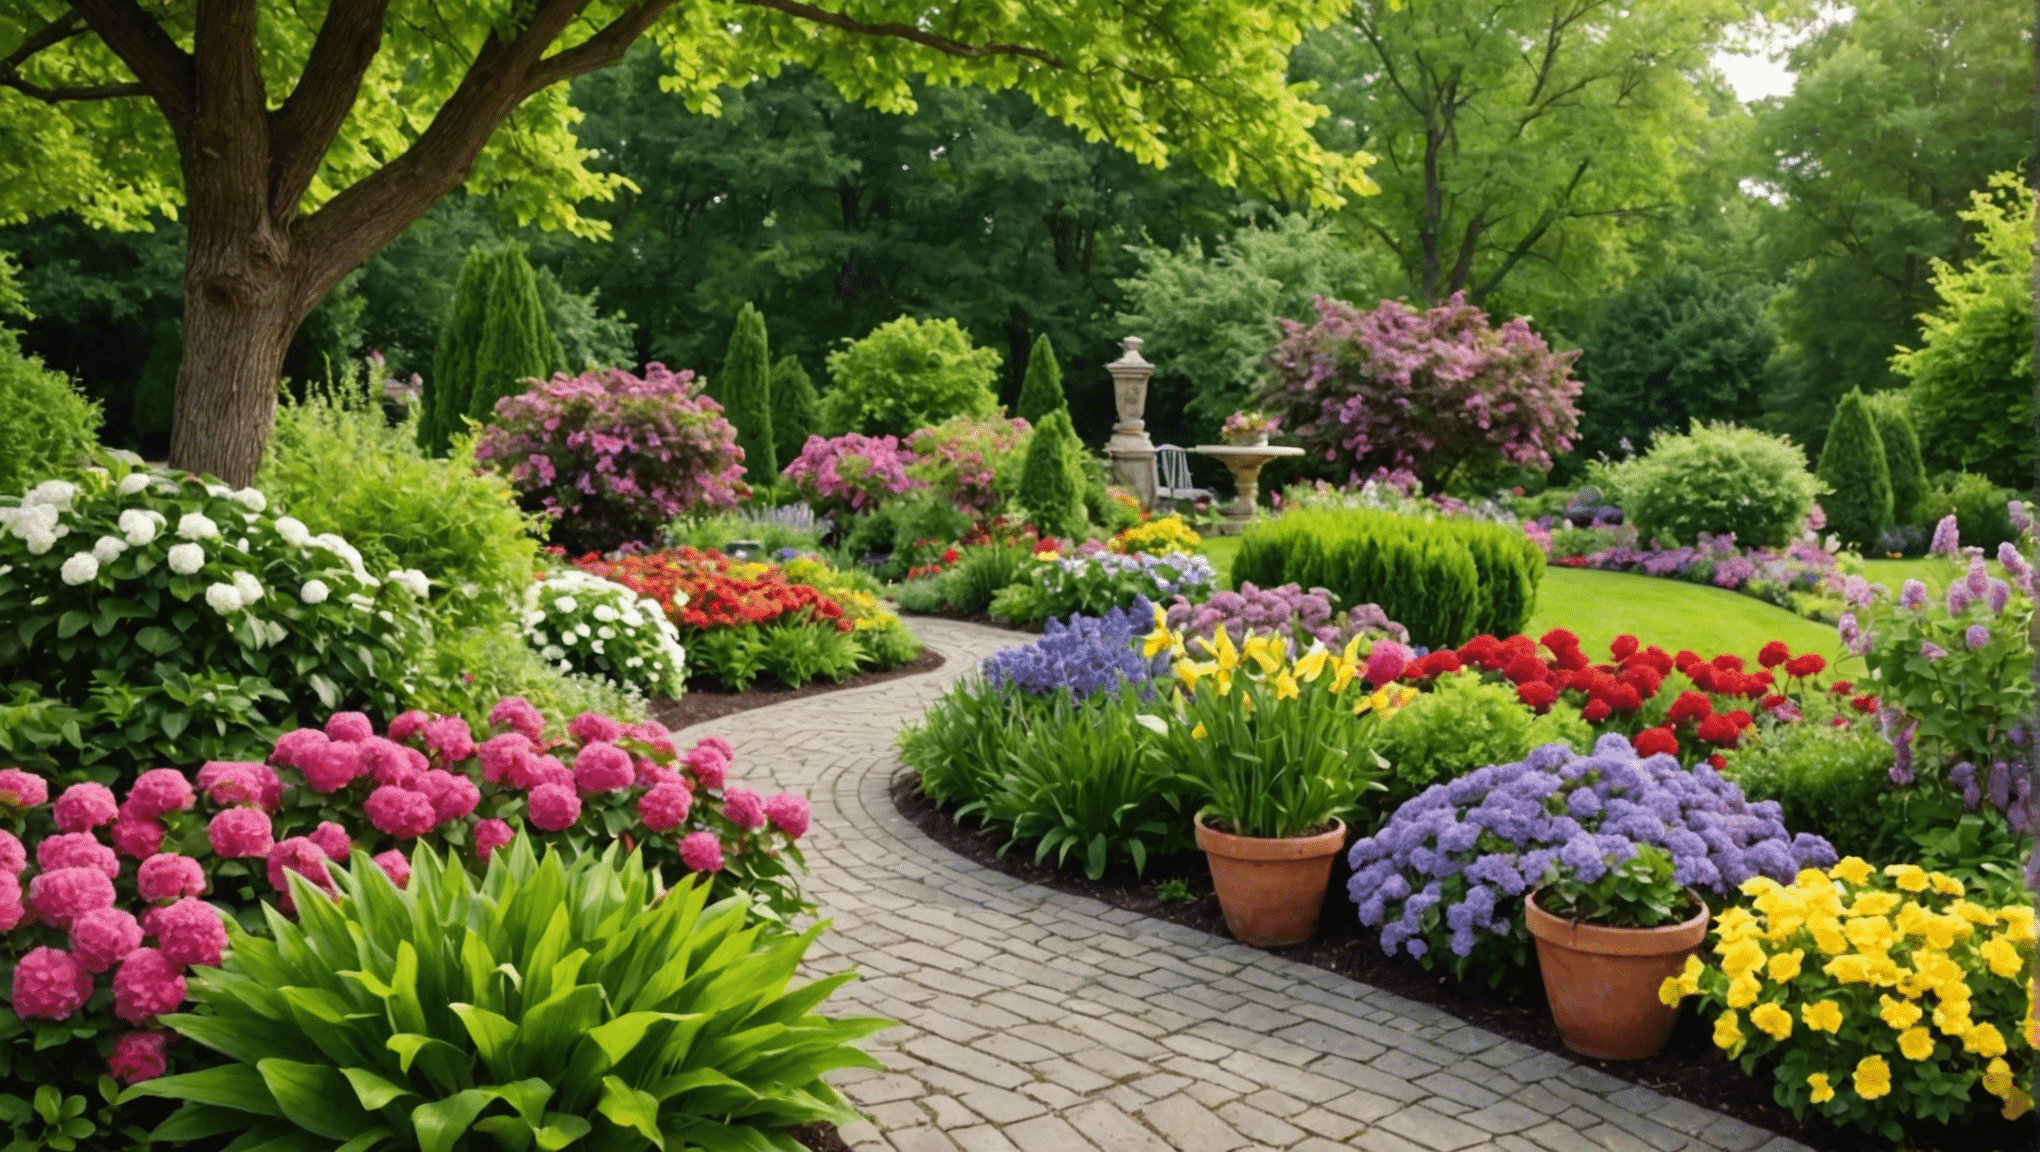 odkryj najlepsze pomysły na letnie ogrodnictwo, które upiększą Twoją przestrzeń na świeżym powietrzu. od żywych kompozycji kwiatowych po innowacyjne, zrównoważone praktyki – znajdź inspirację do pielęgnowania kwitnącego ogrodu w tym sezonie.